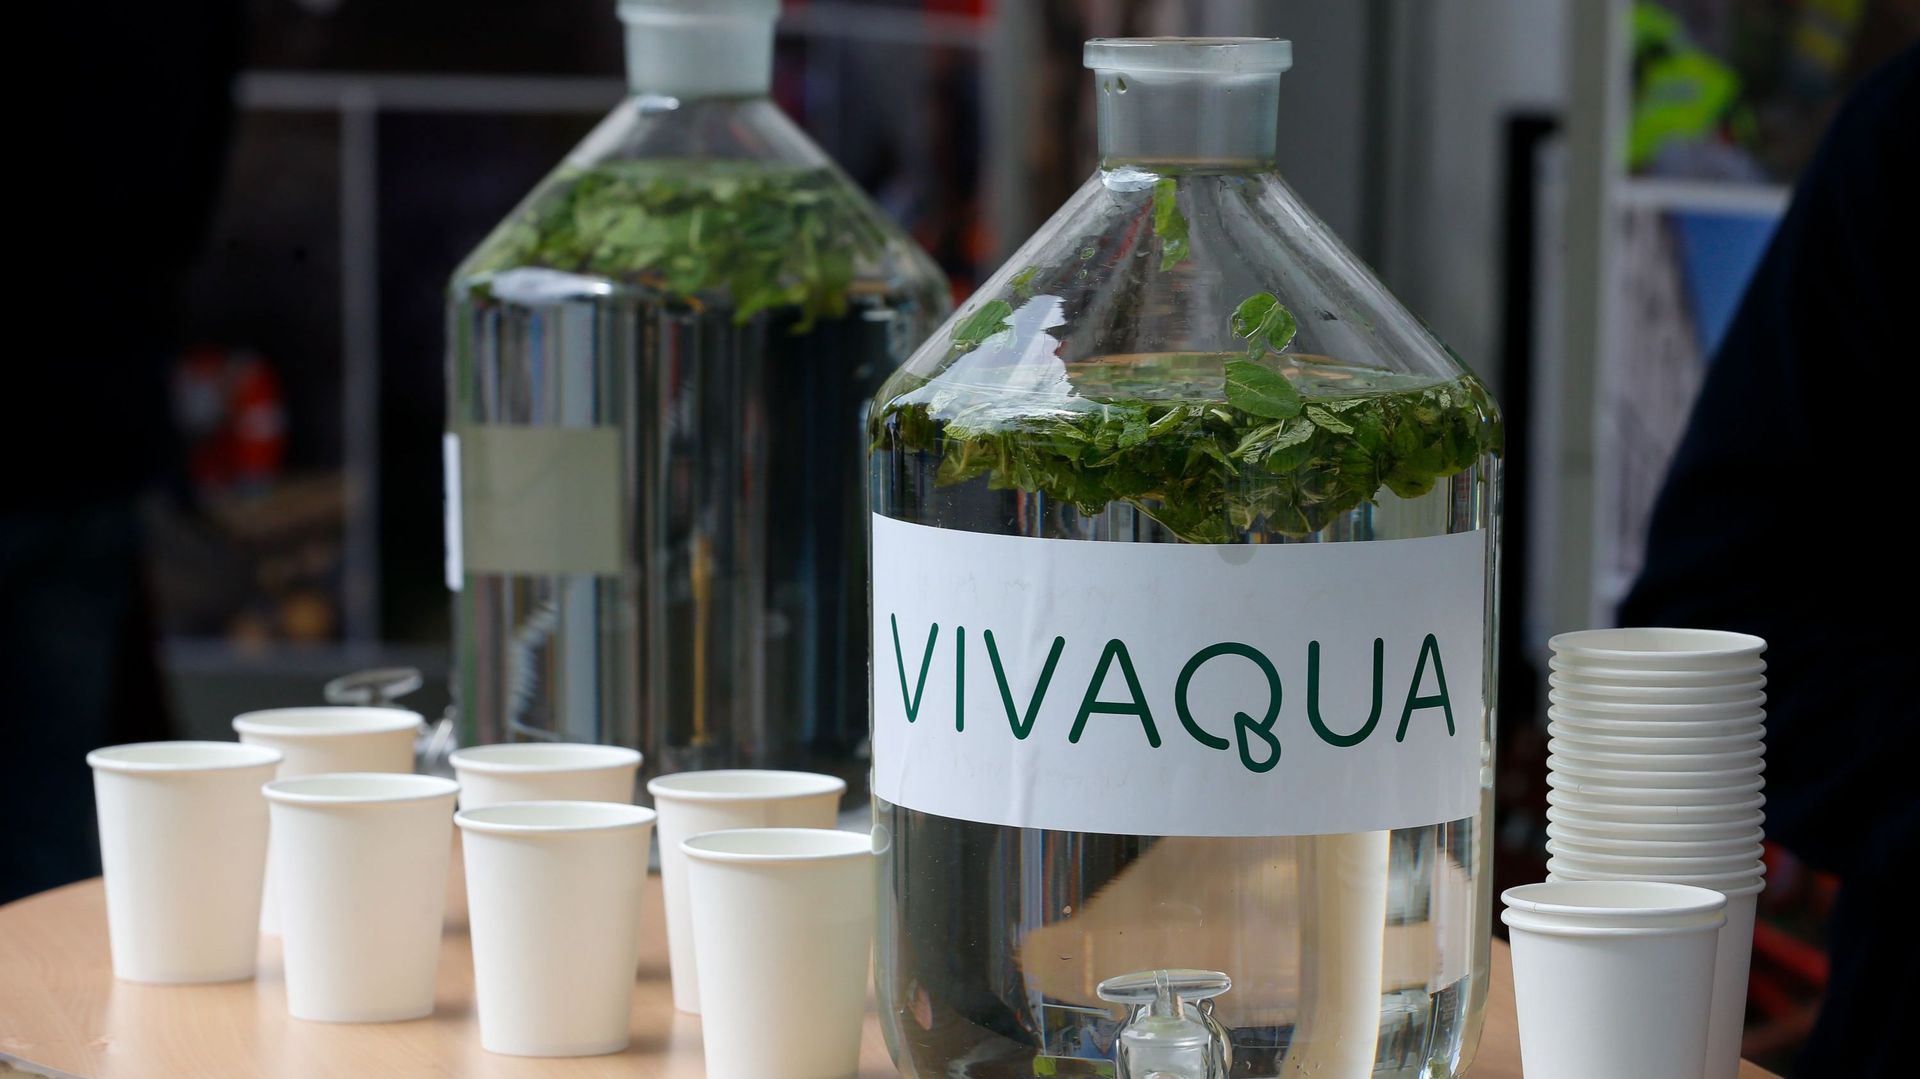 Une qualité de l'eau "irréprochable", dit Vivaqua.